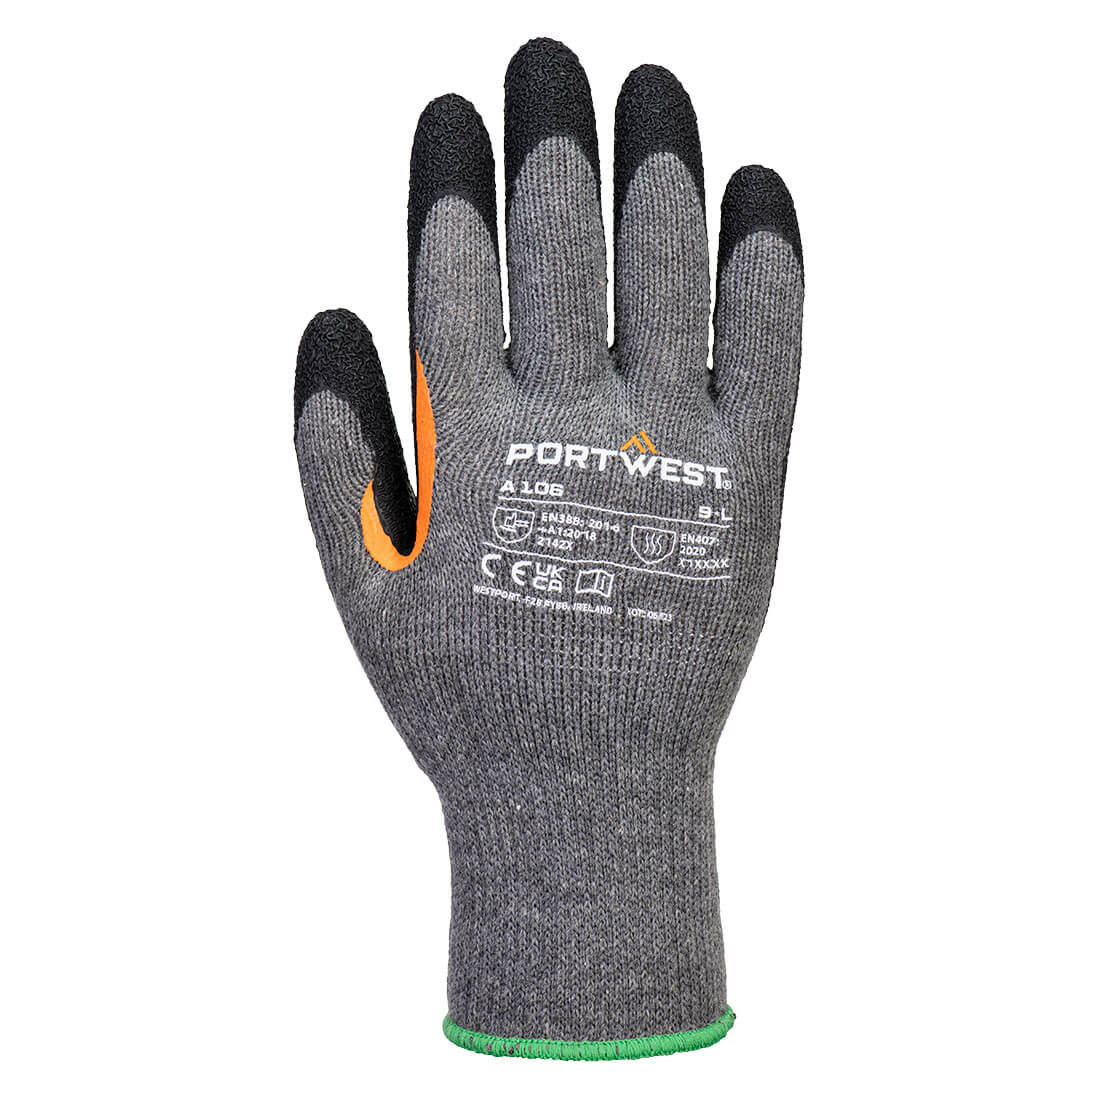 Grip 10 Latex-Handschuh mit verstärktem Daumen (Pk12) - Arbeitschutz